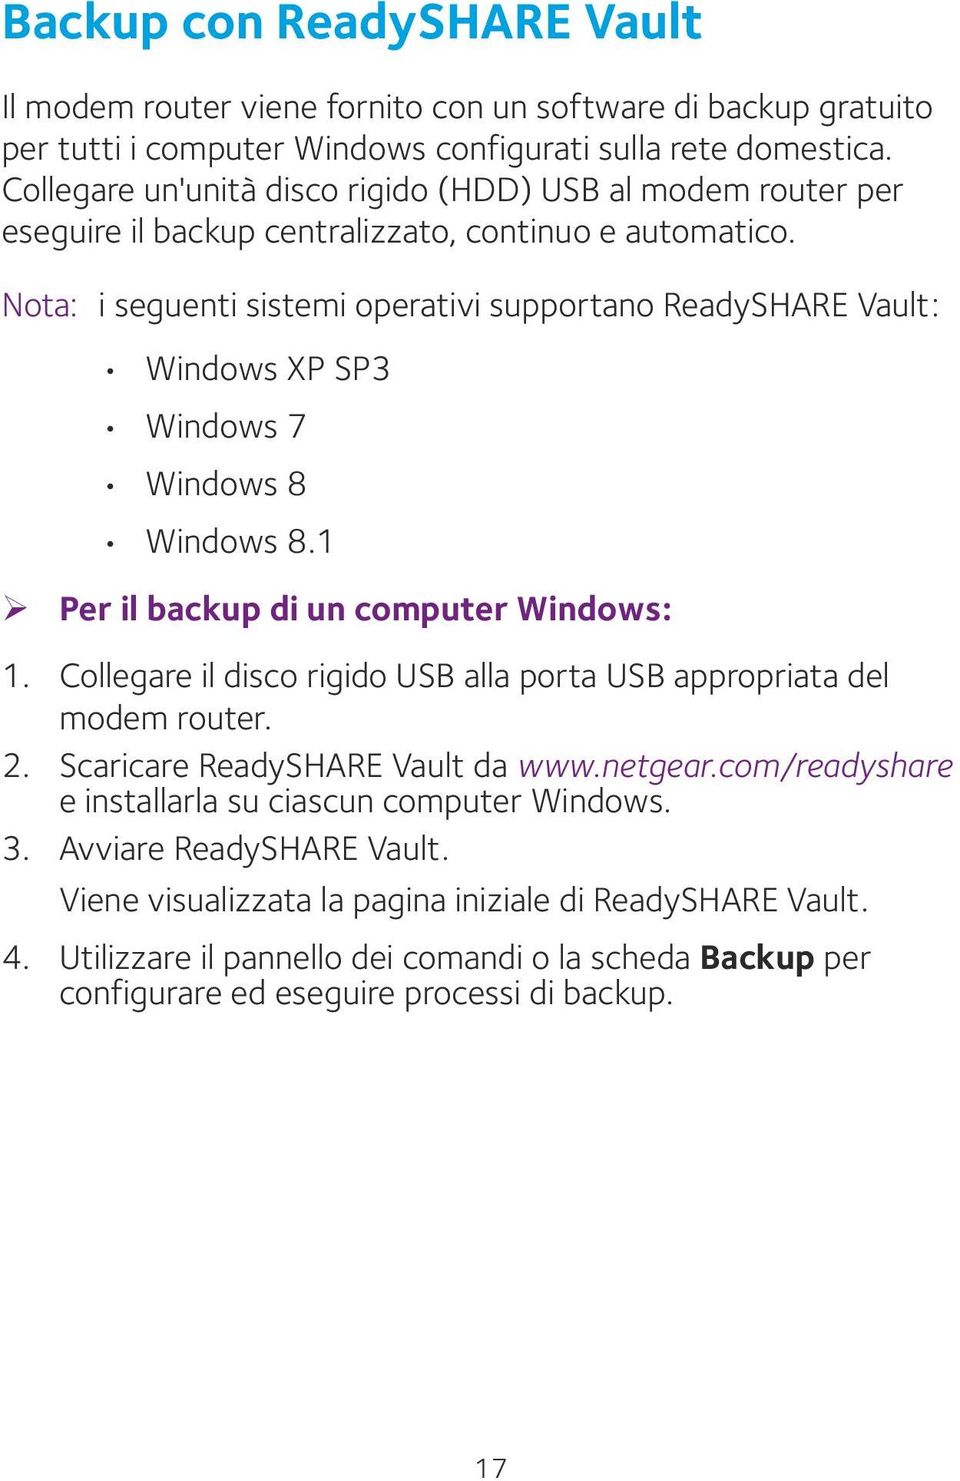 Nota: i seguenti sistemi operativi supportano ReadySHARE Vault: Windows XP SP3 Windows 7 Windows 8 Windows 8.1 ¾ Per il backup di un computer Windows: 1.